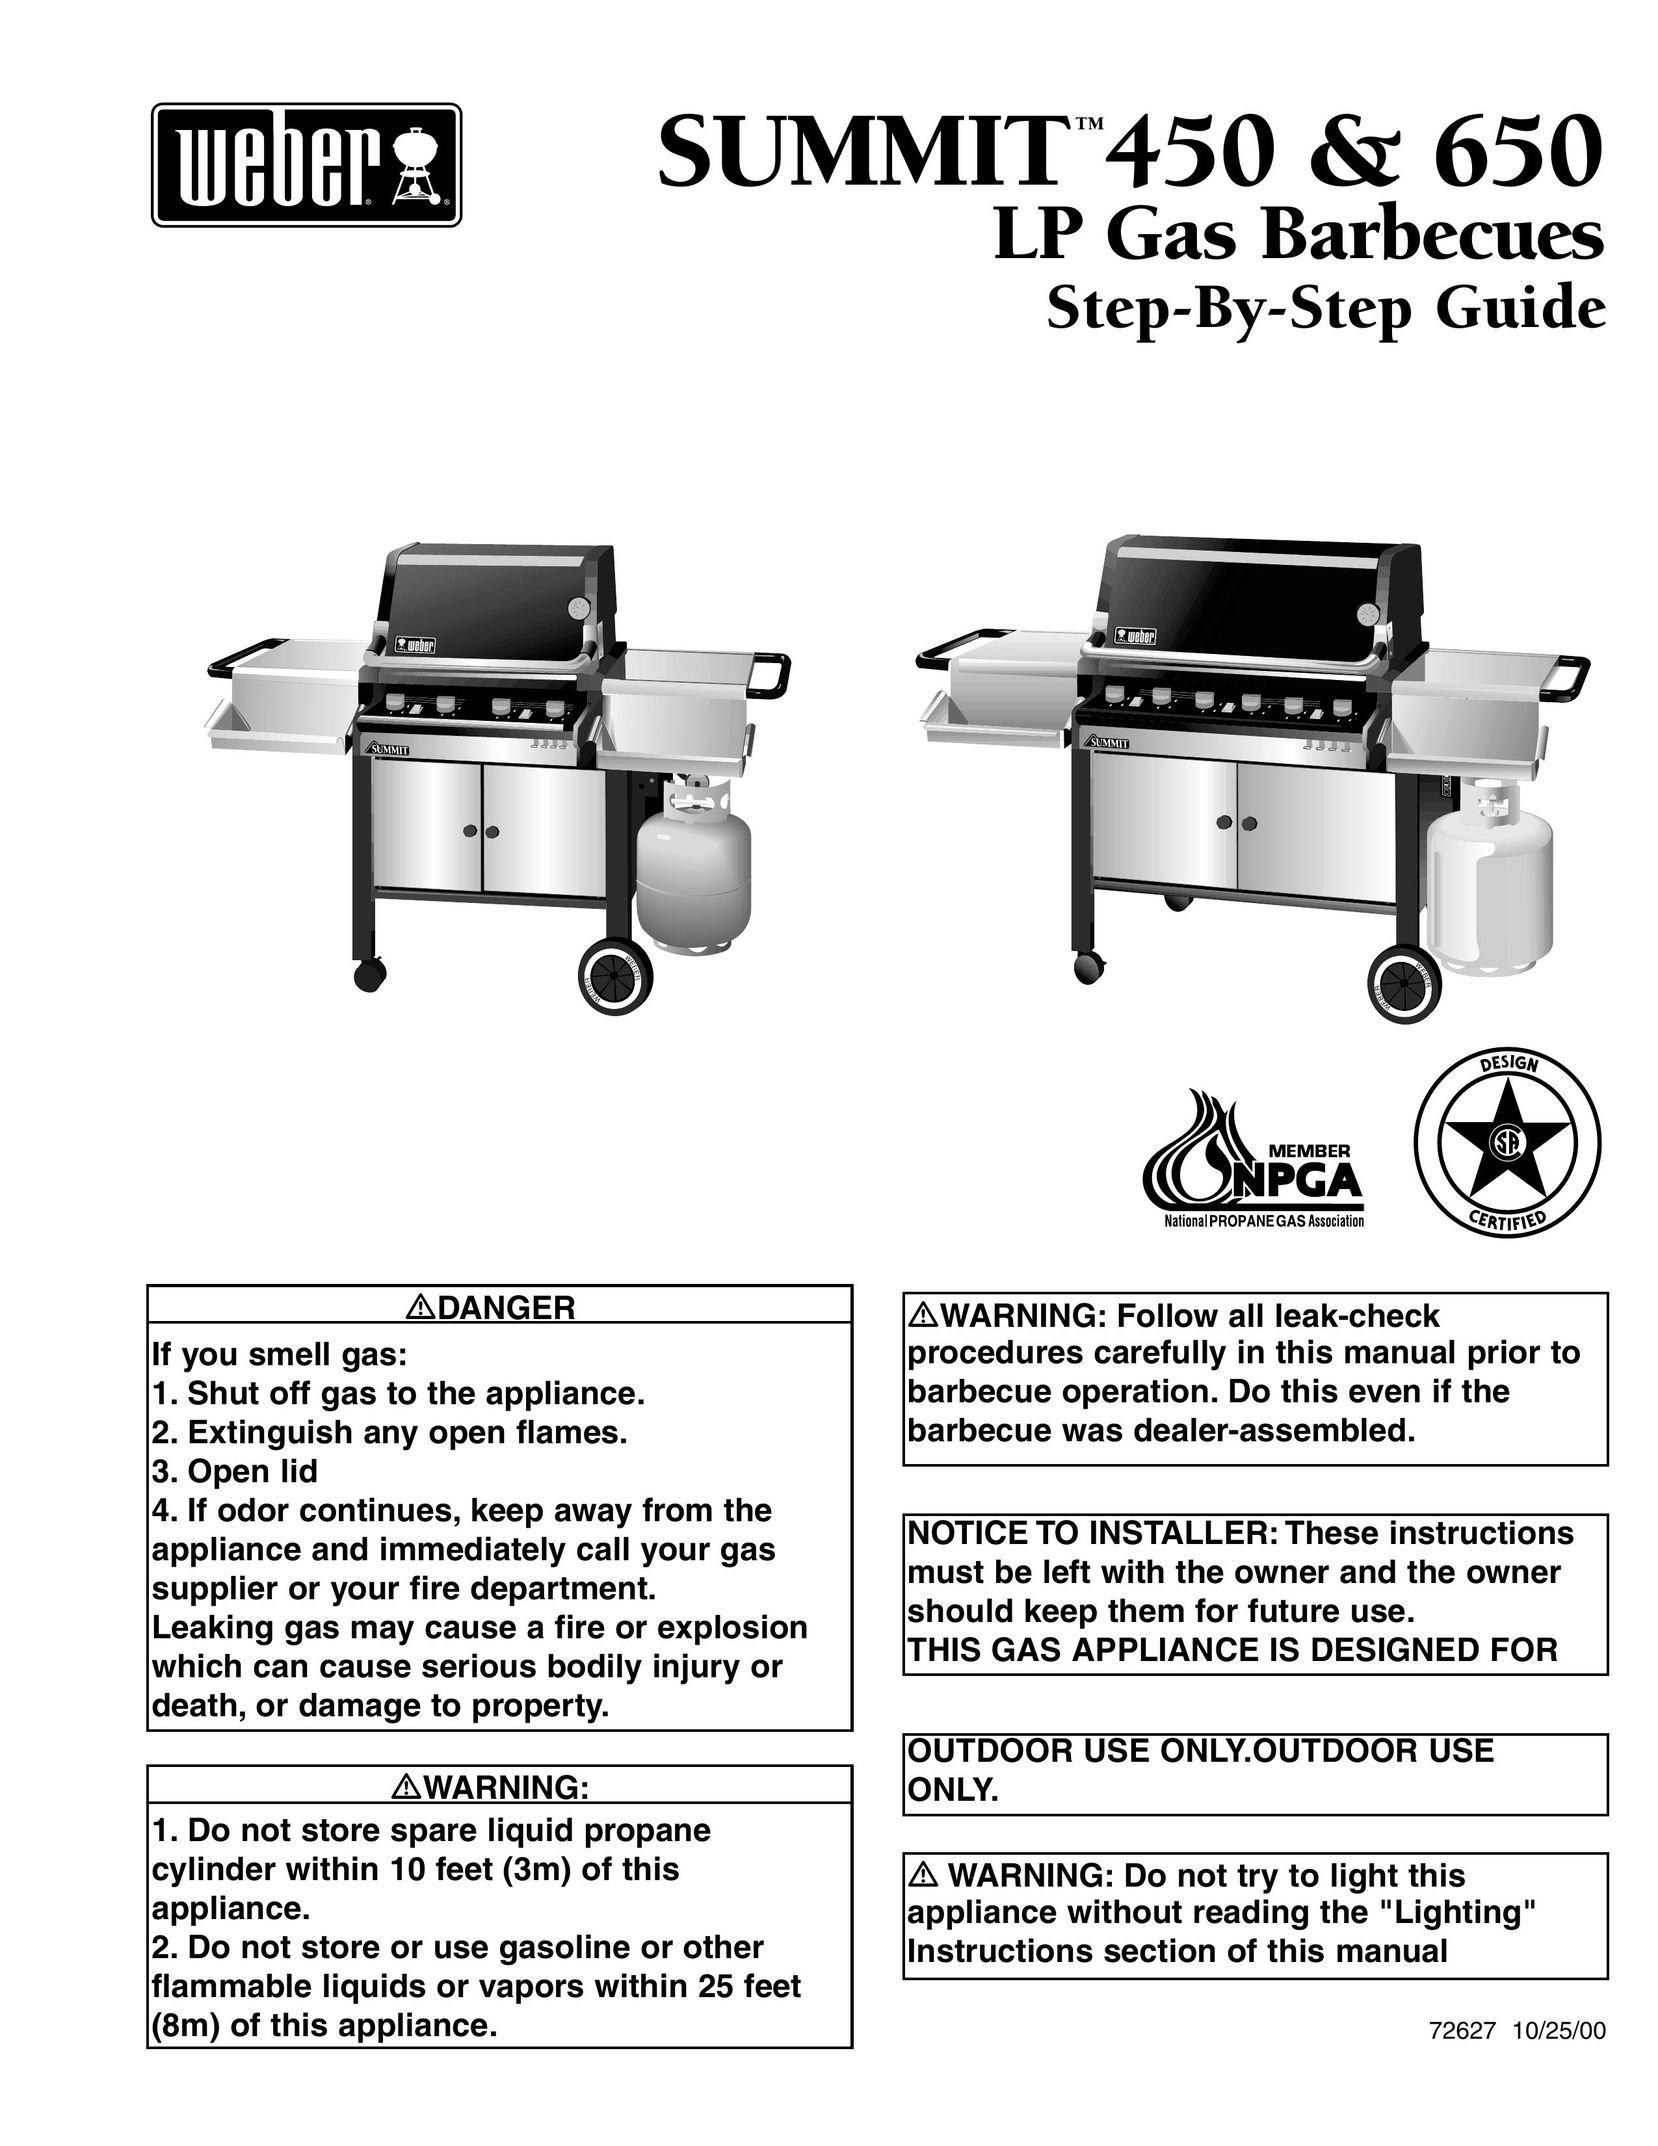 Weber 450 Griddle User Manual